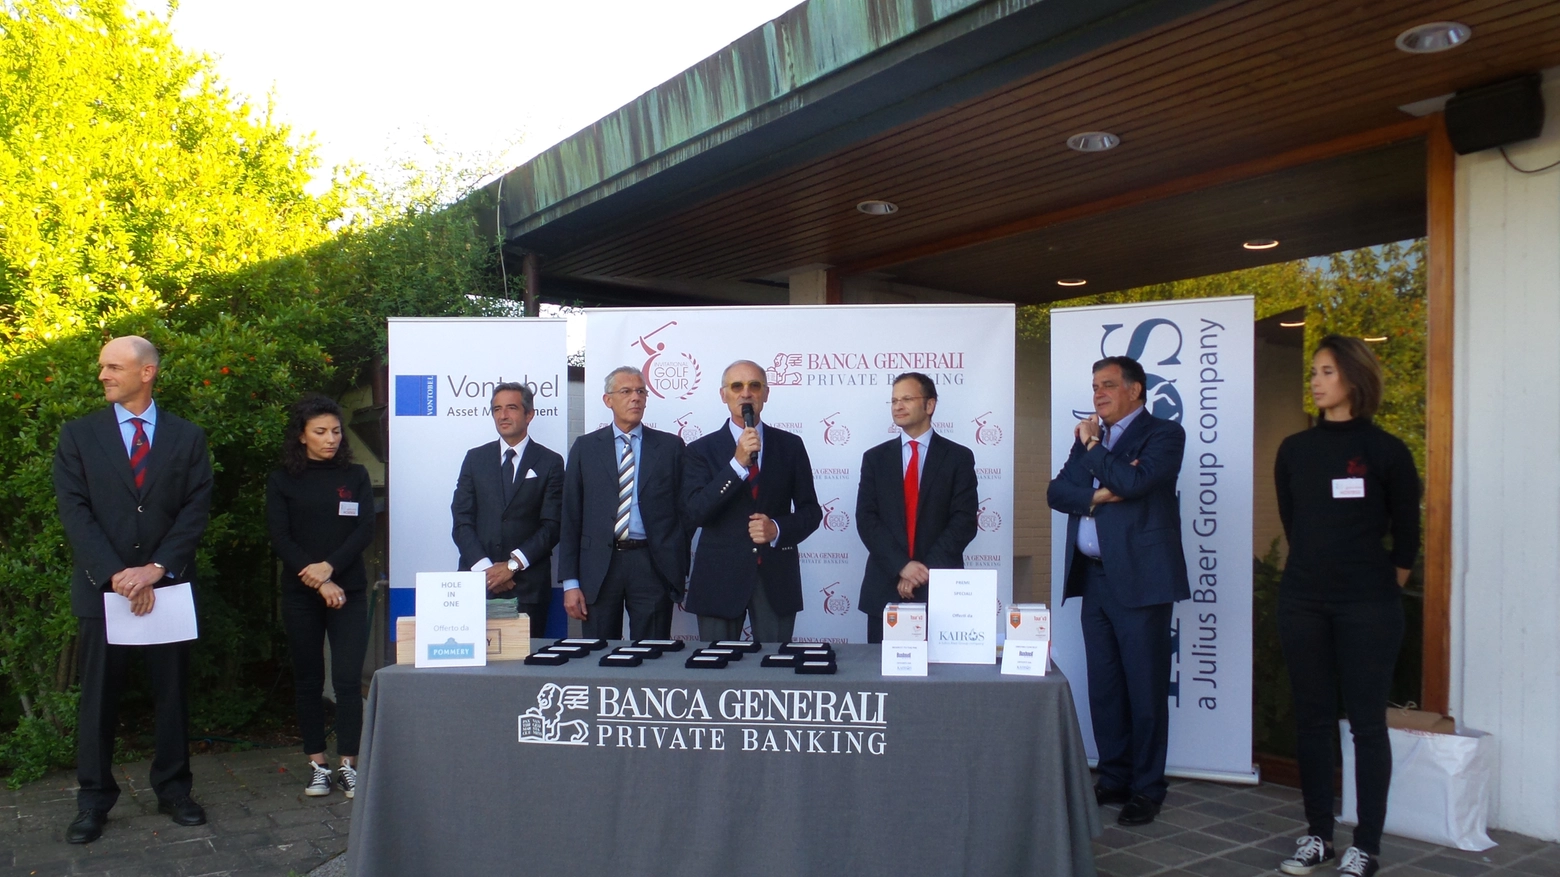 La premiazione Banca Generali al Bologna